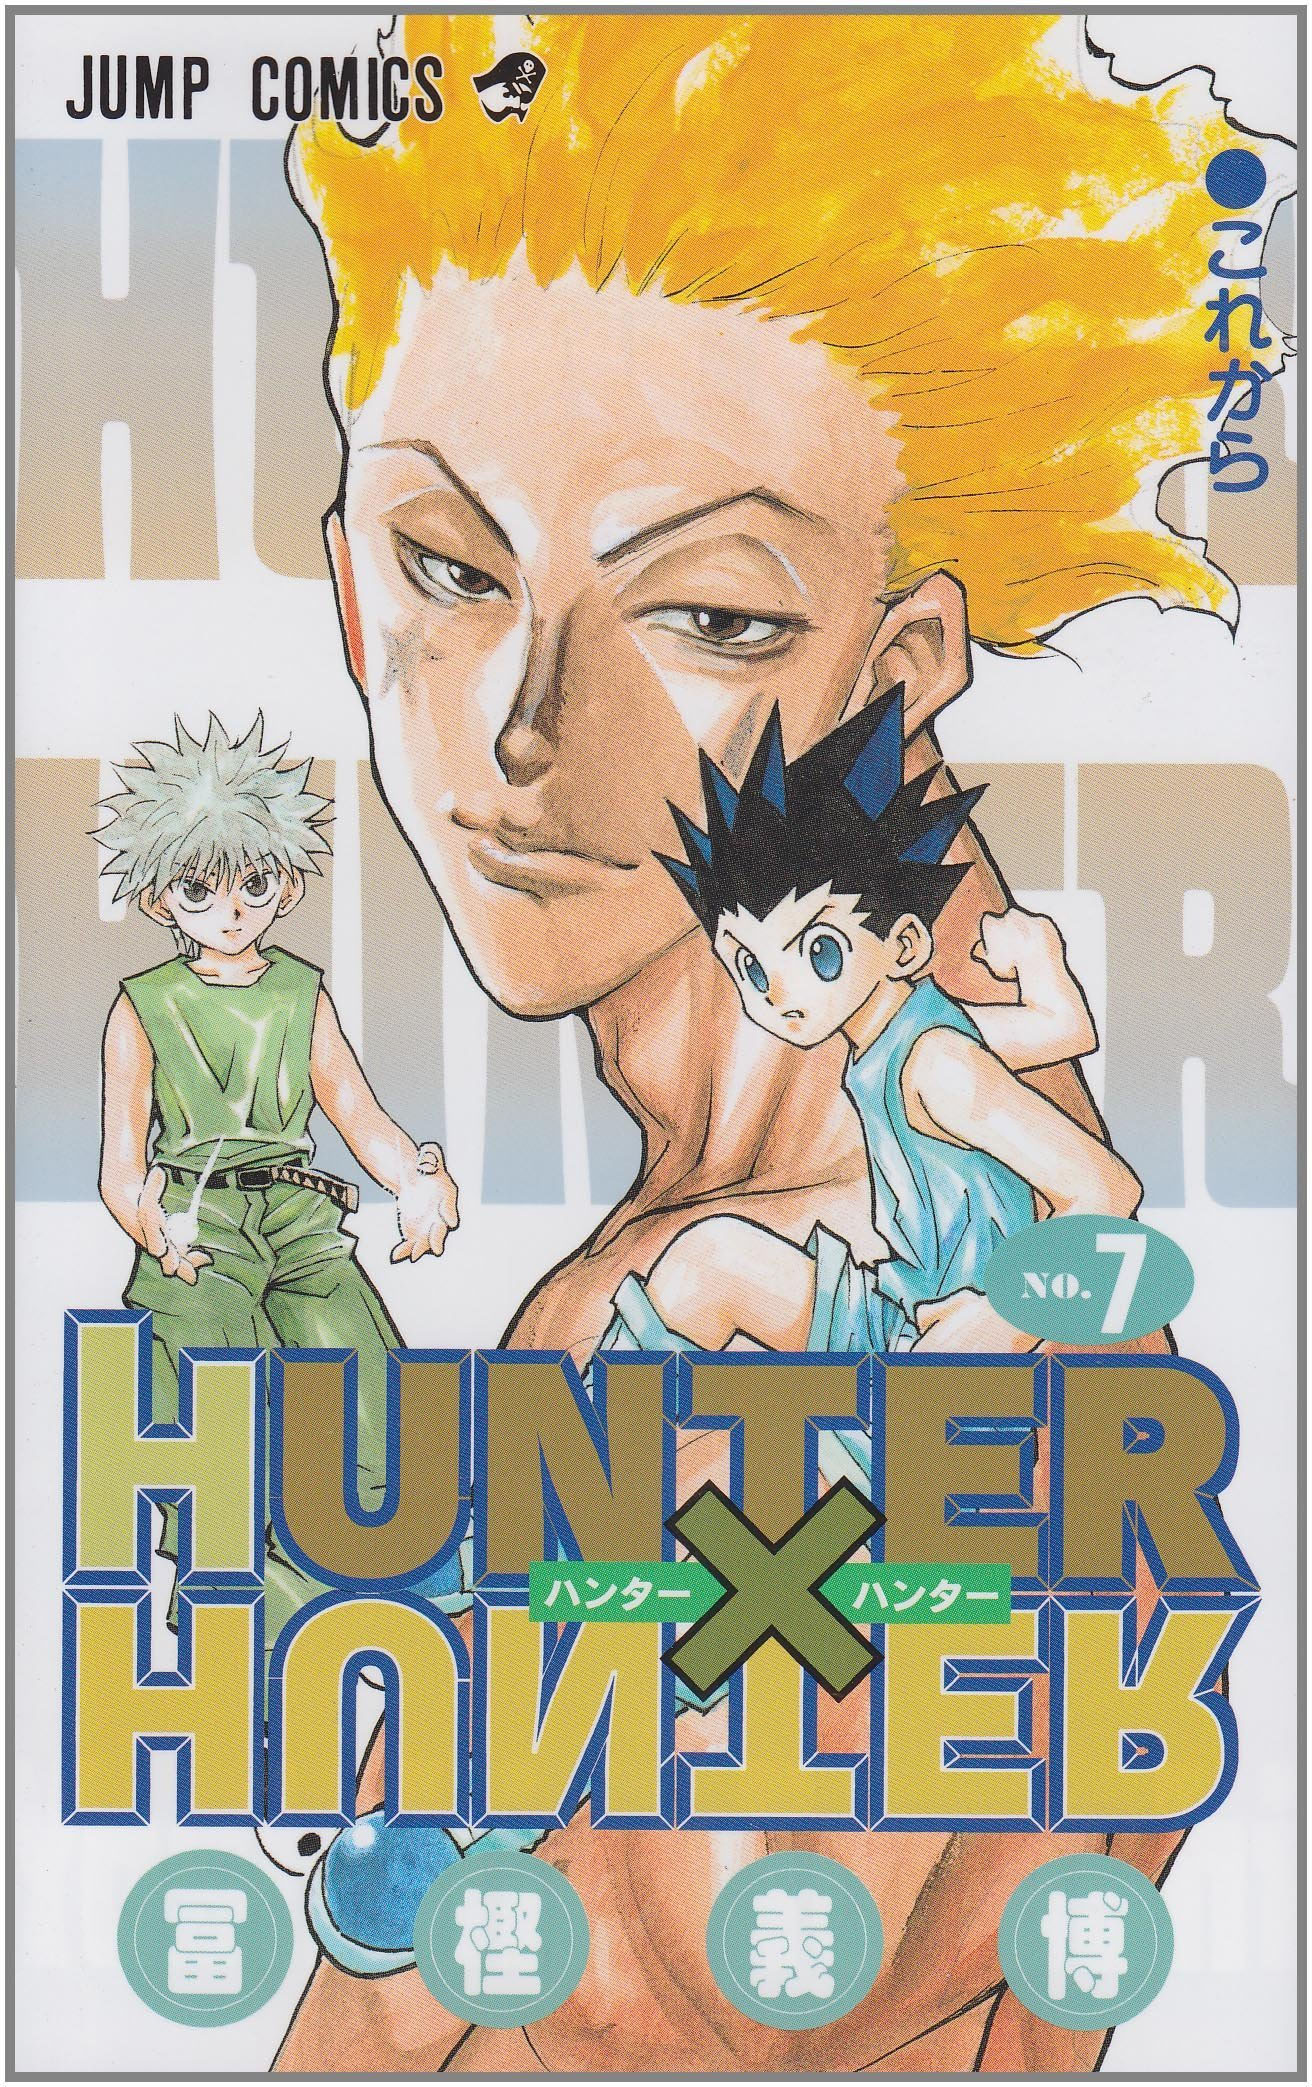 Elite Hunter x Hunter on X: A nova temporada de Hunter x Hunter irá  adaptar os acontecimentos do Continente Negro e lutas como Hisoka Vs  Chrollo finalmente serão animadas.  / X